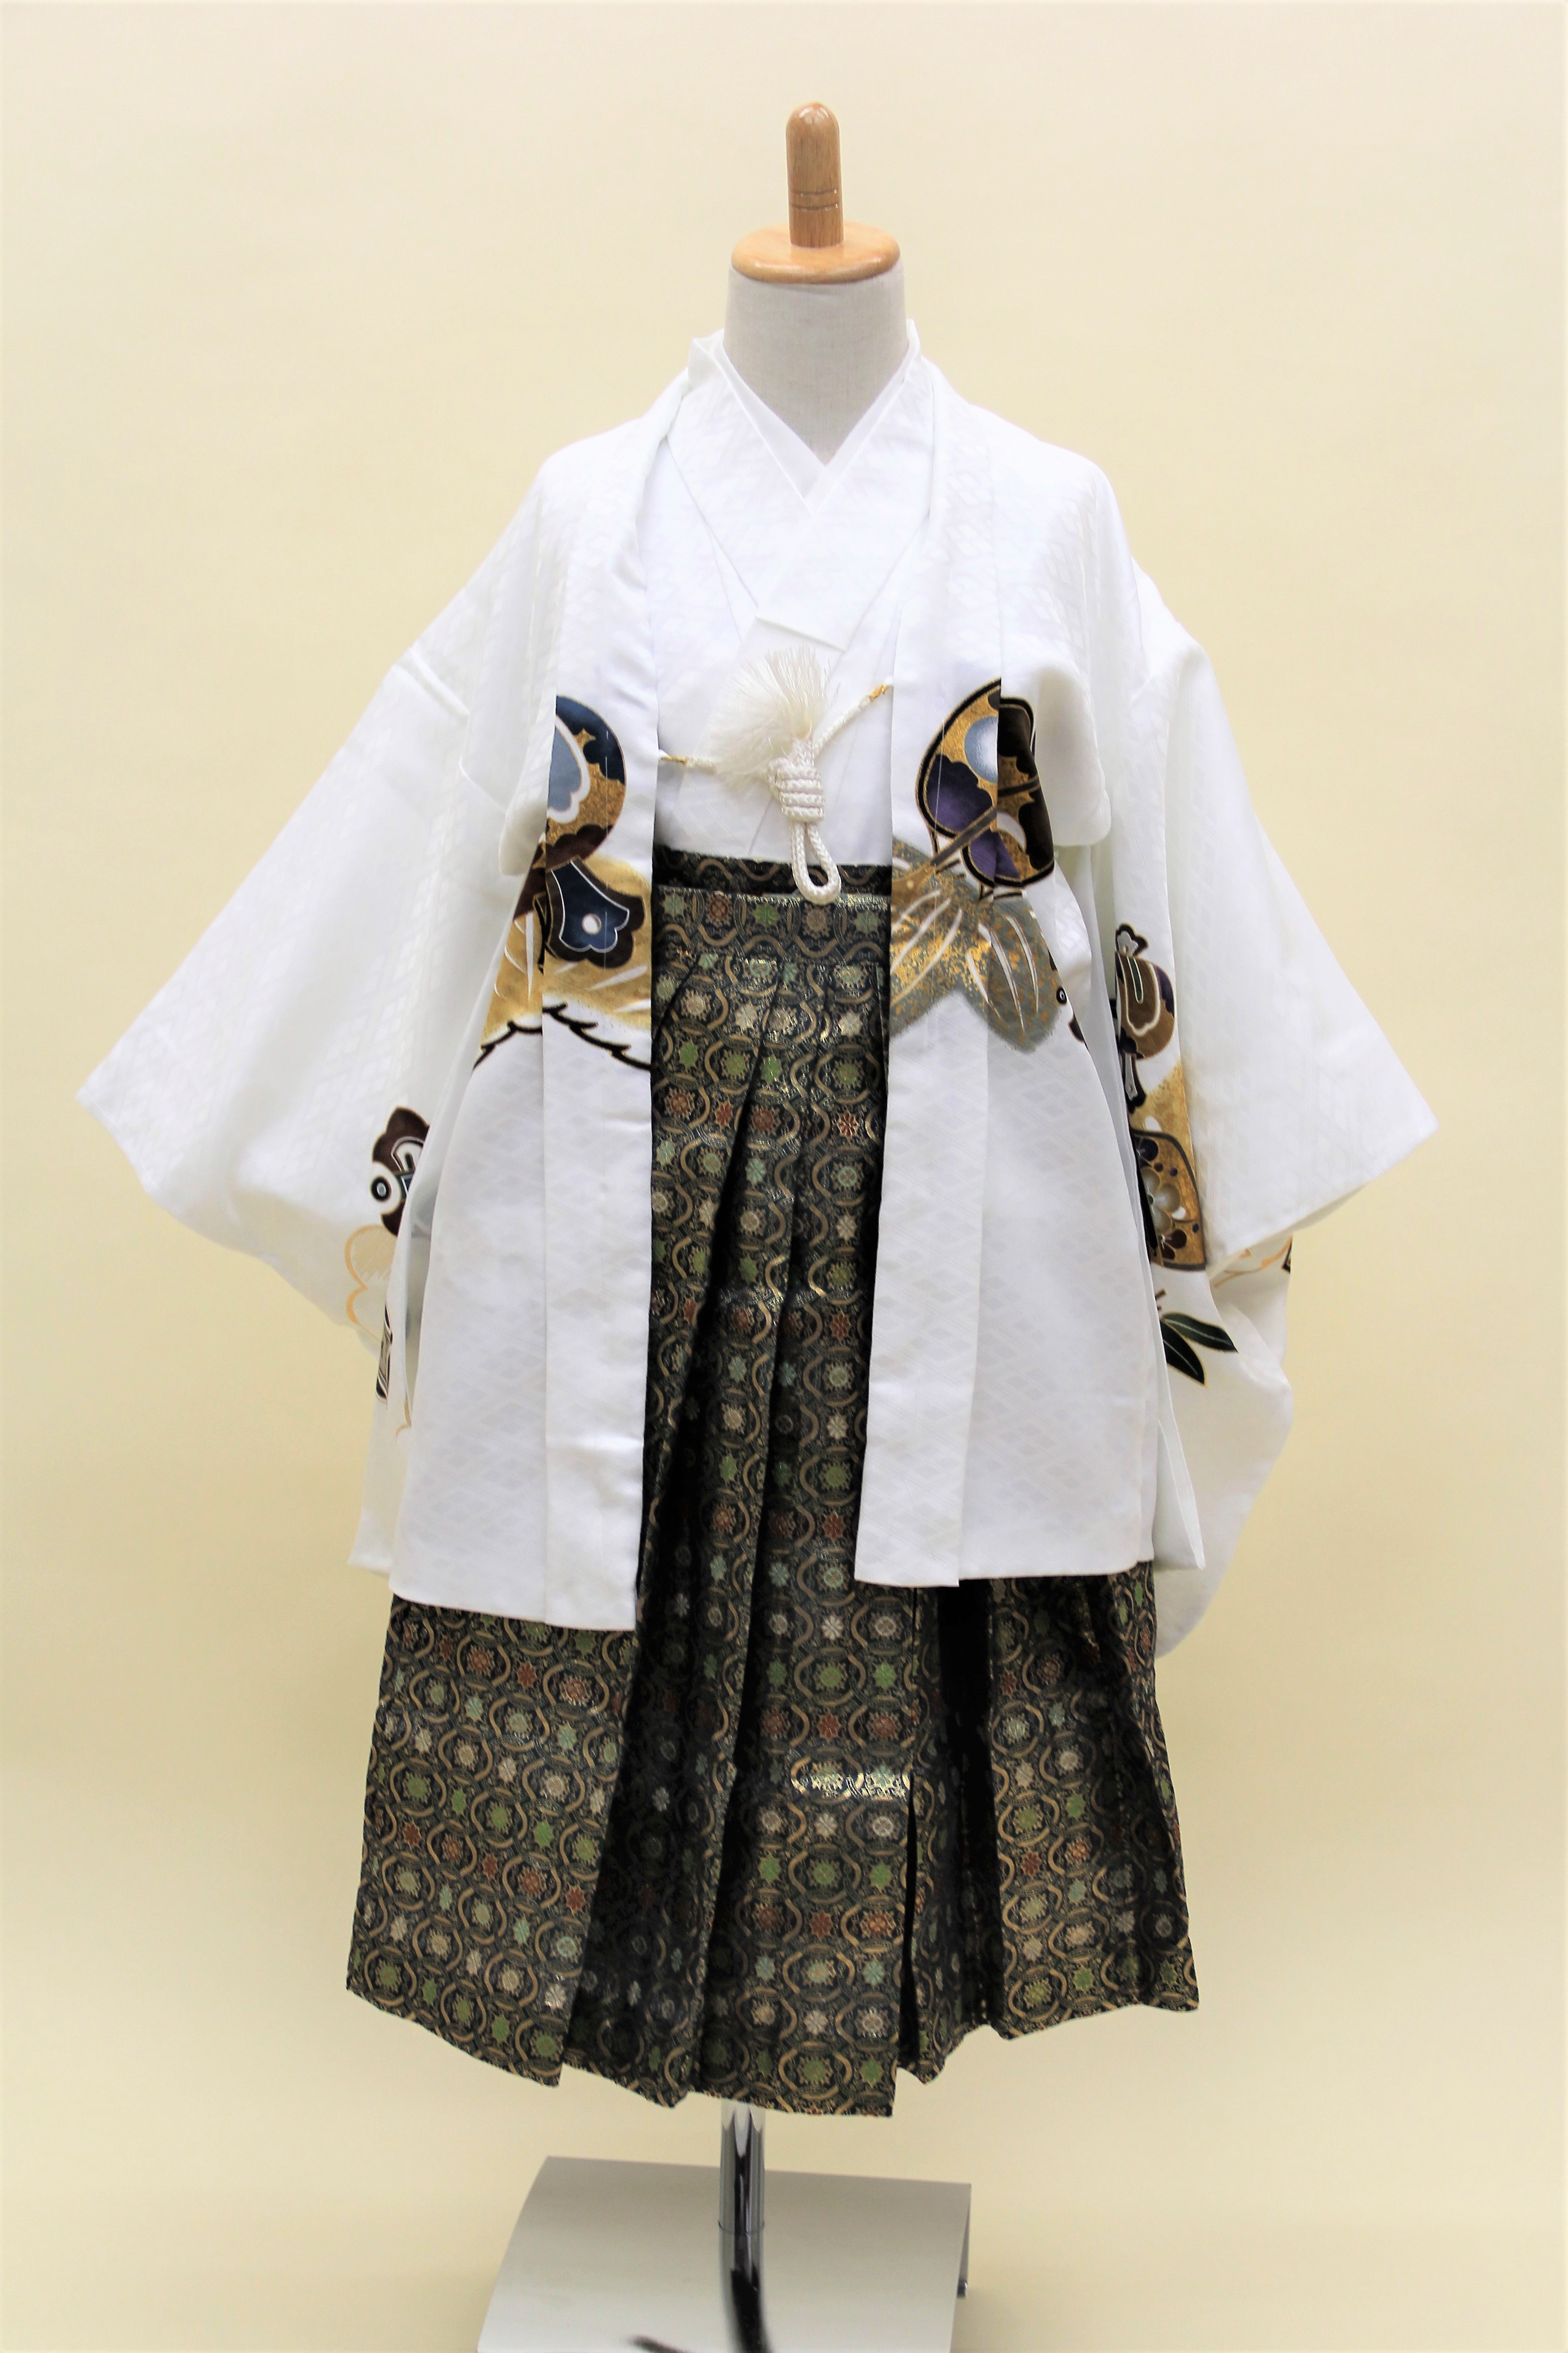 5歳男児 羽織袴フルセット「白地羽織袴」